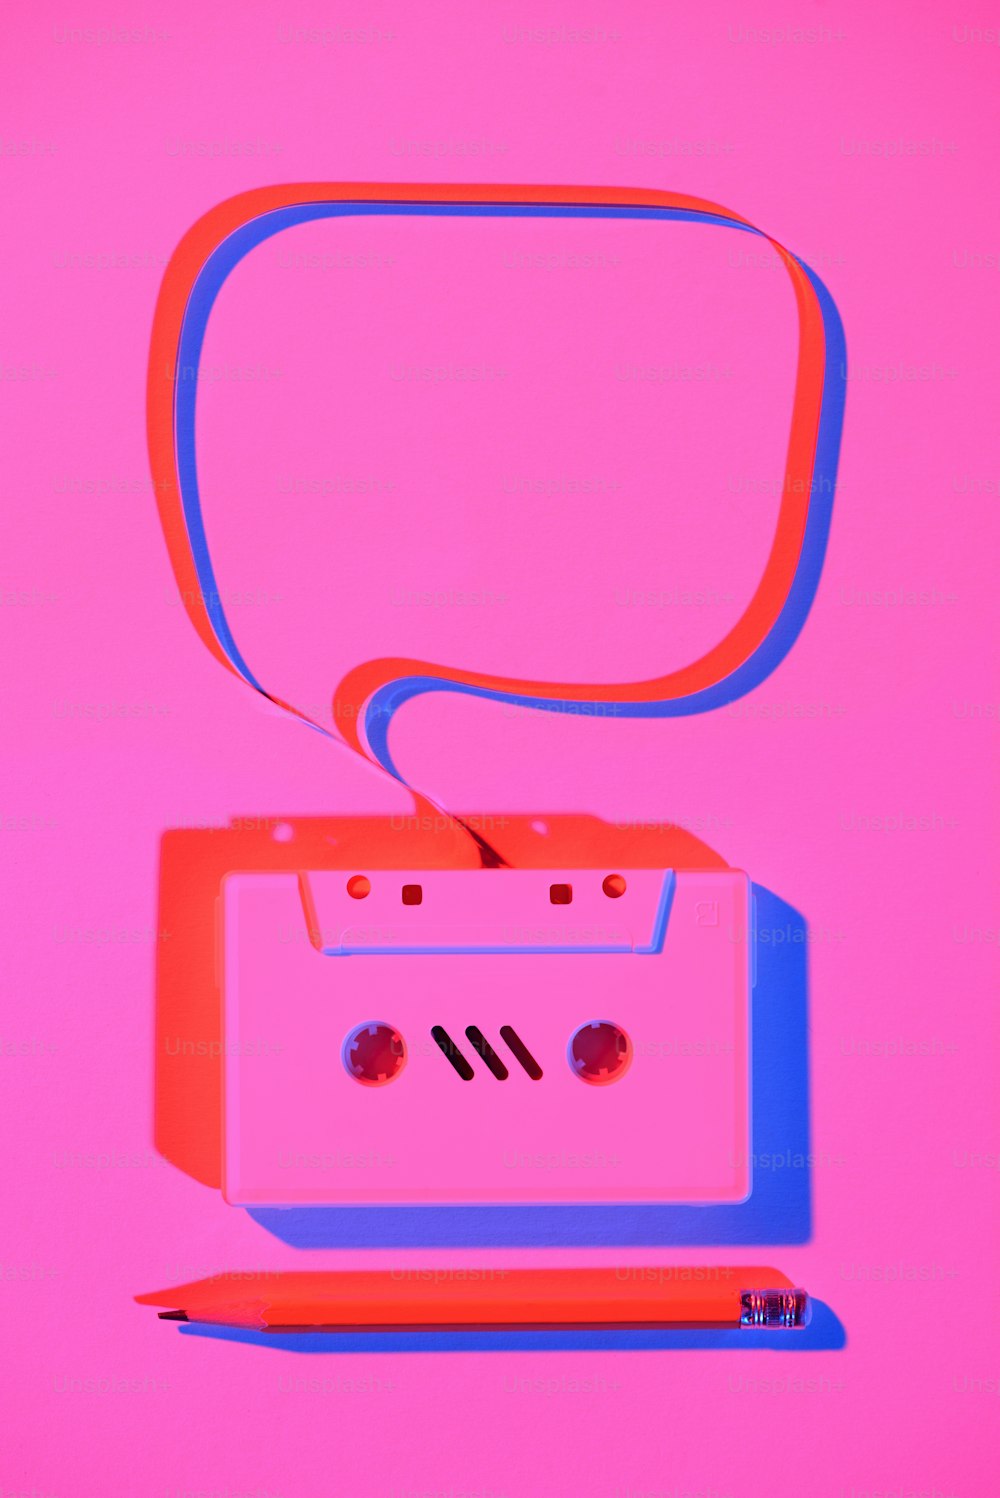 Image rose tonique d’un crayon et d’une cassette audio rétro avec bulle